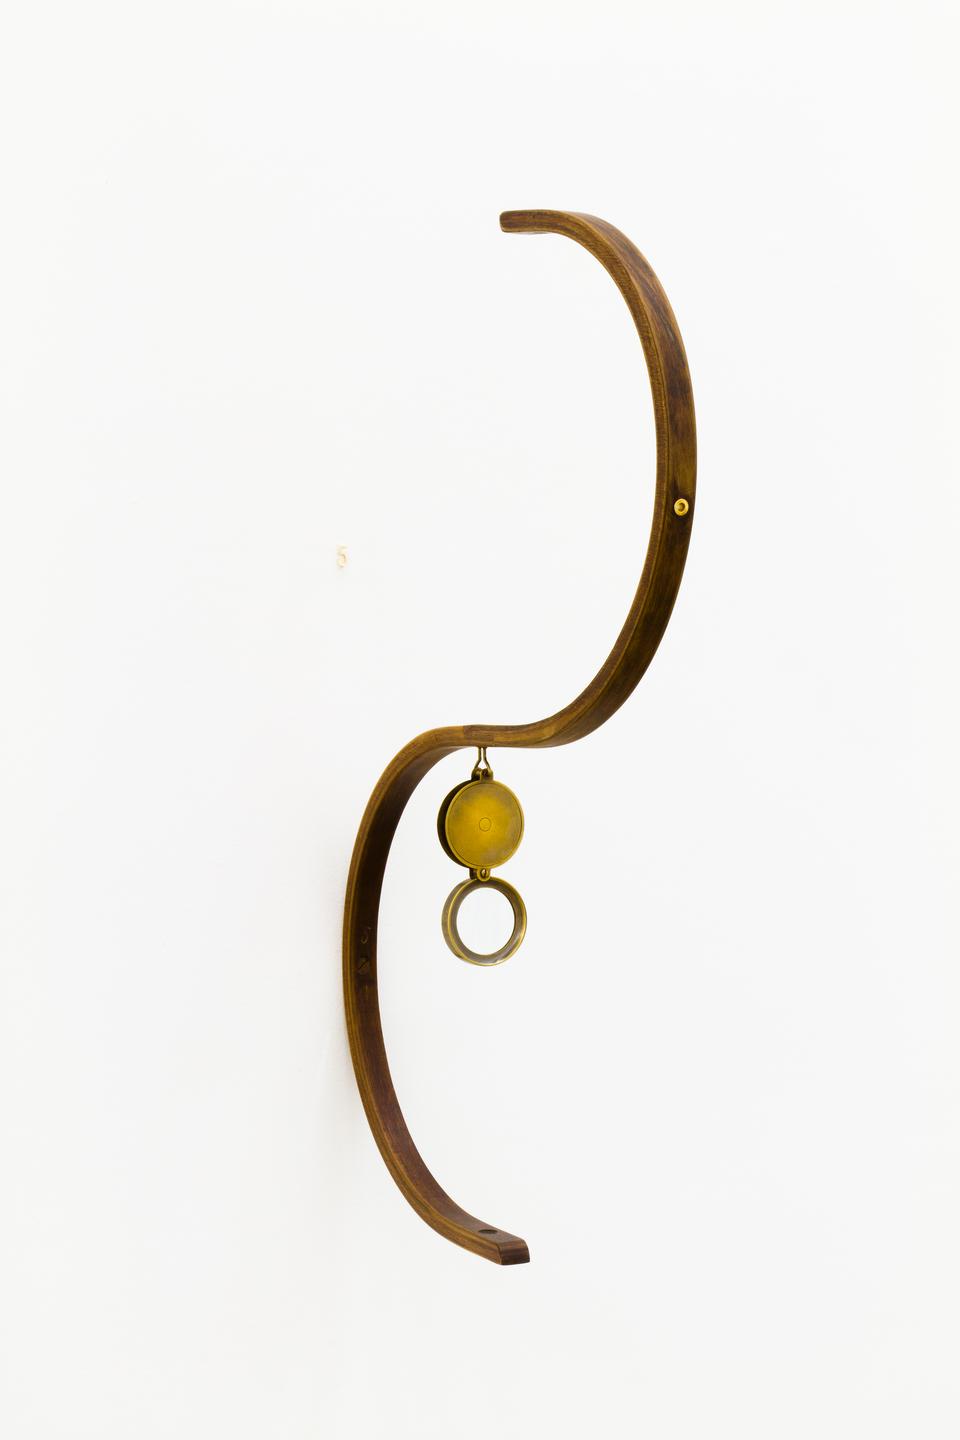 “Simetria 5”, 2012, madeira, lupa e número em ouro, 62 x 41 x 6 cm